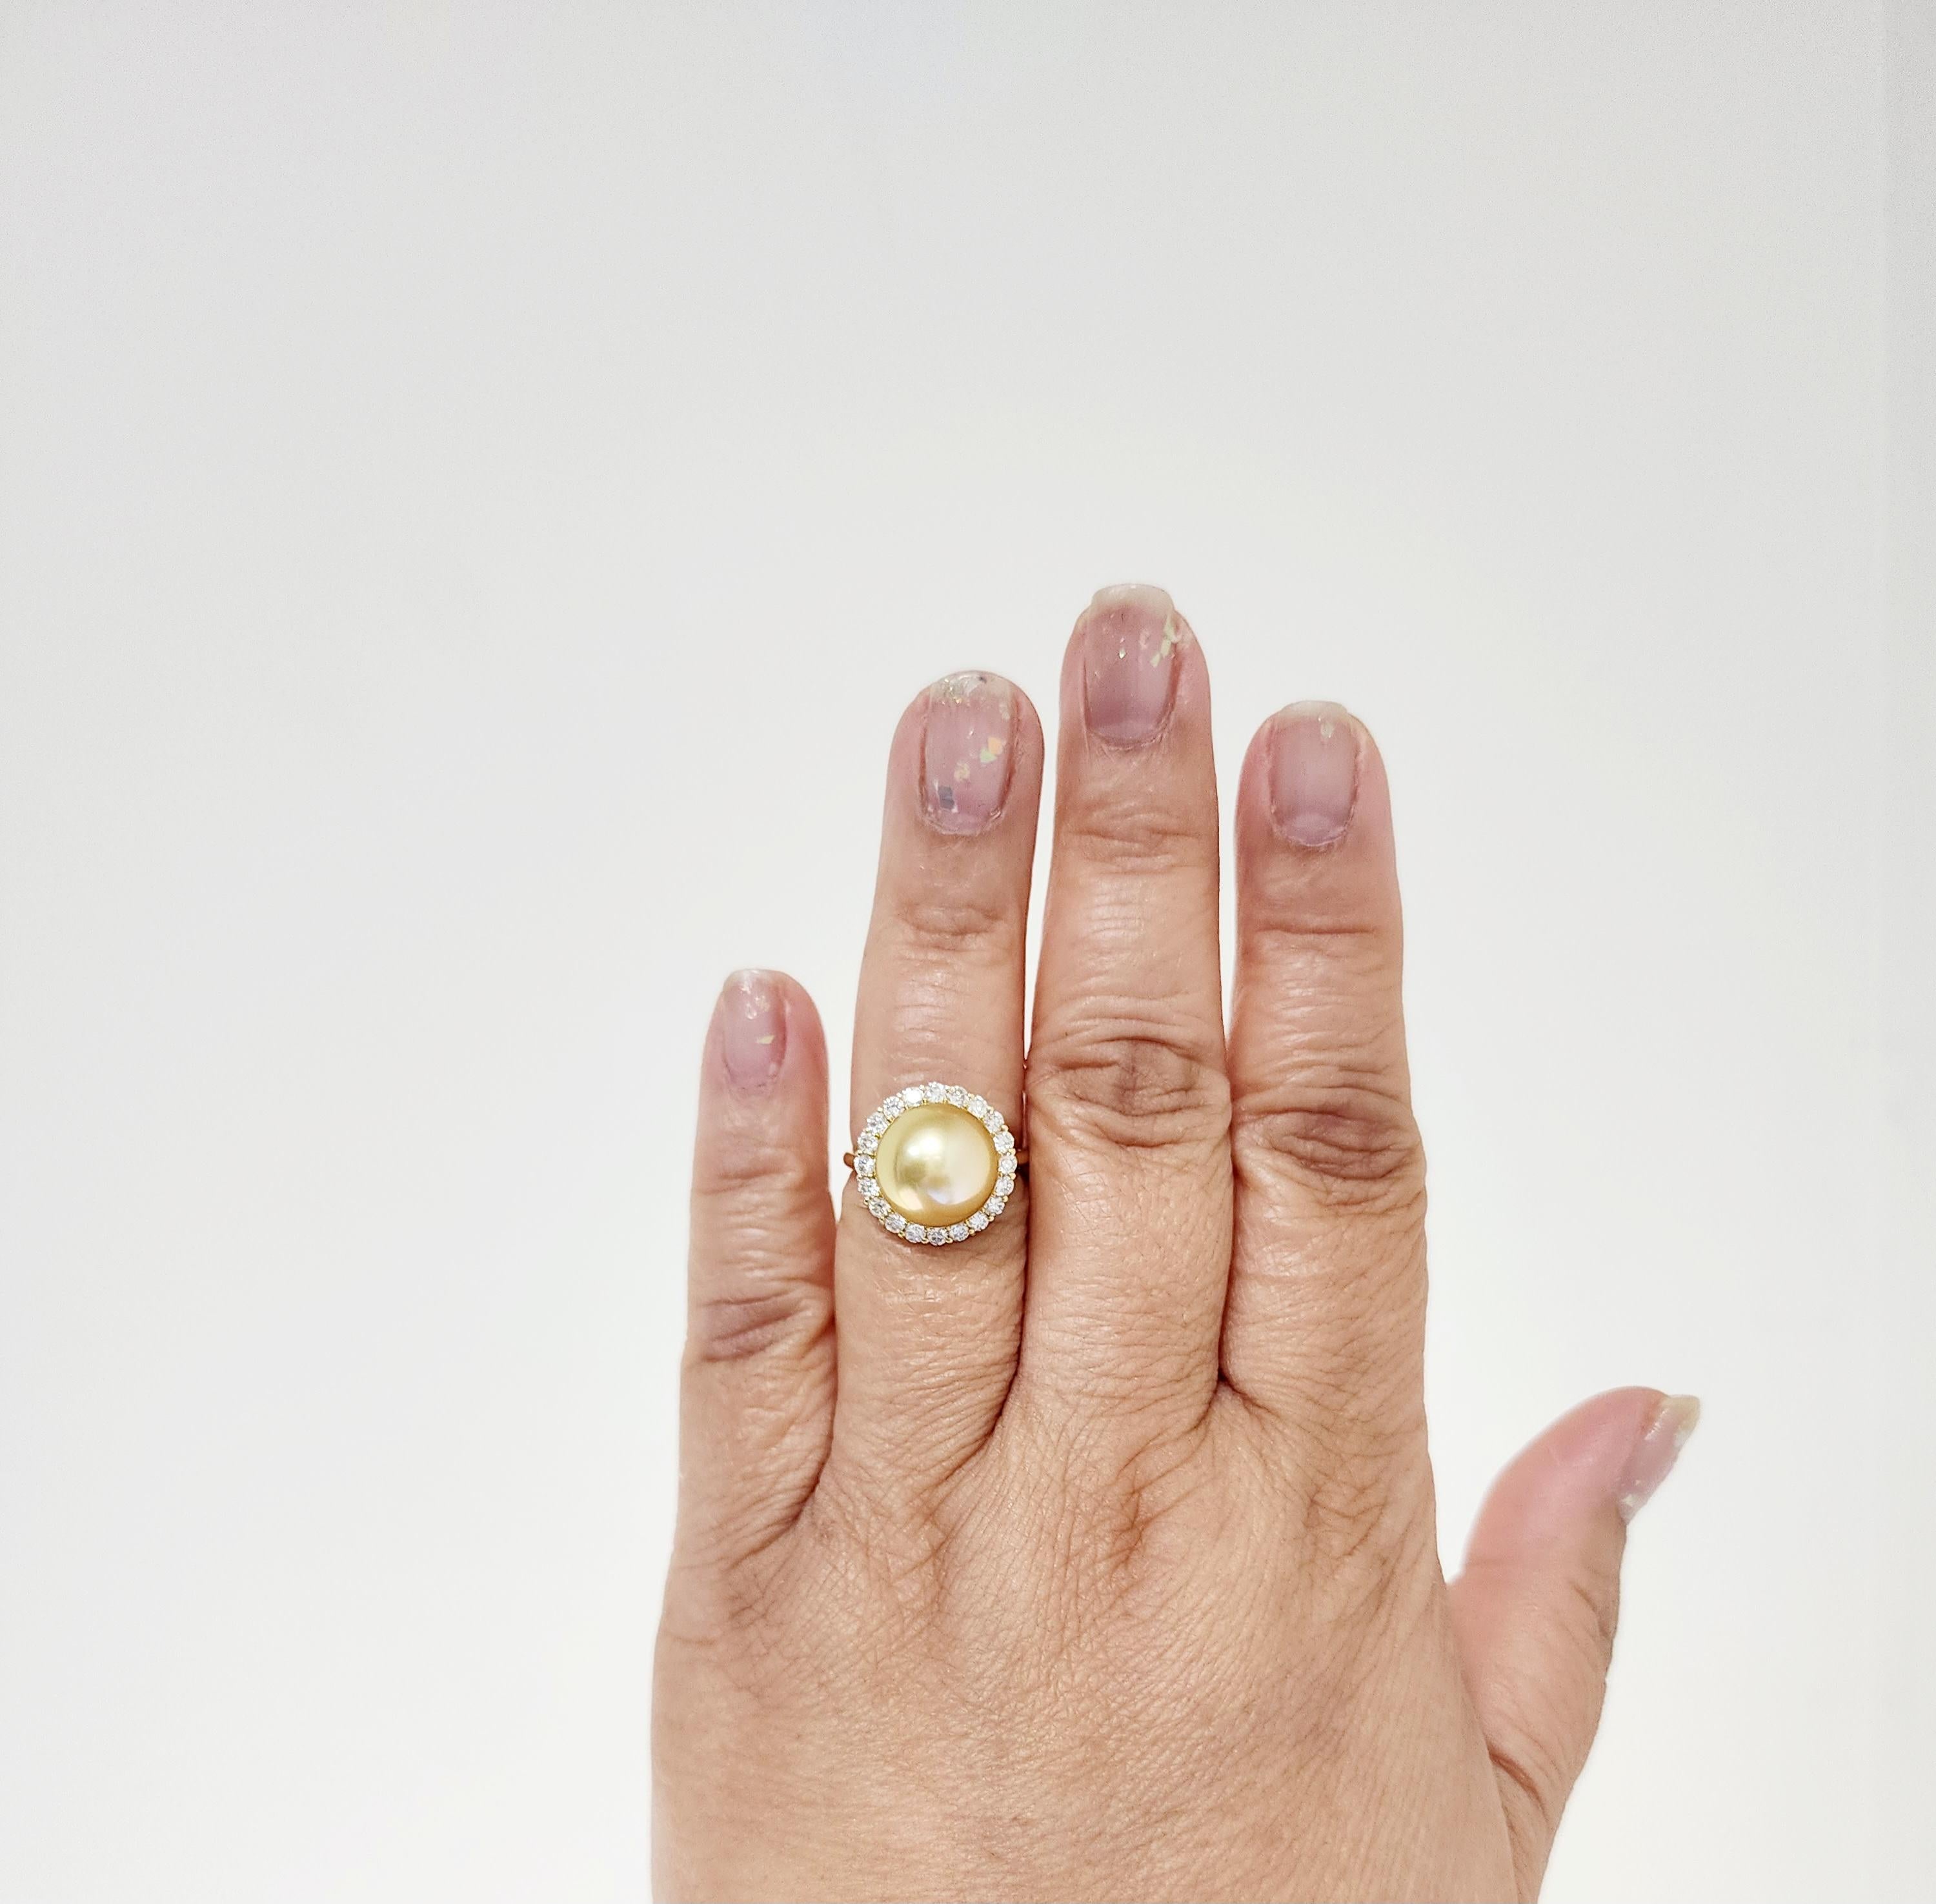 Belle grosse perle ronde dorée avec 0,70 ct. de diamants ronds de bonne qualité, blancs et brillants.  Fabriqué à la main en or jaune 18k.  Bague taille 6,25.